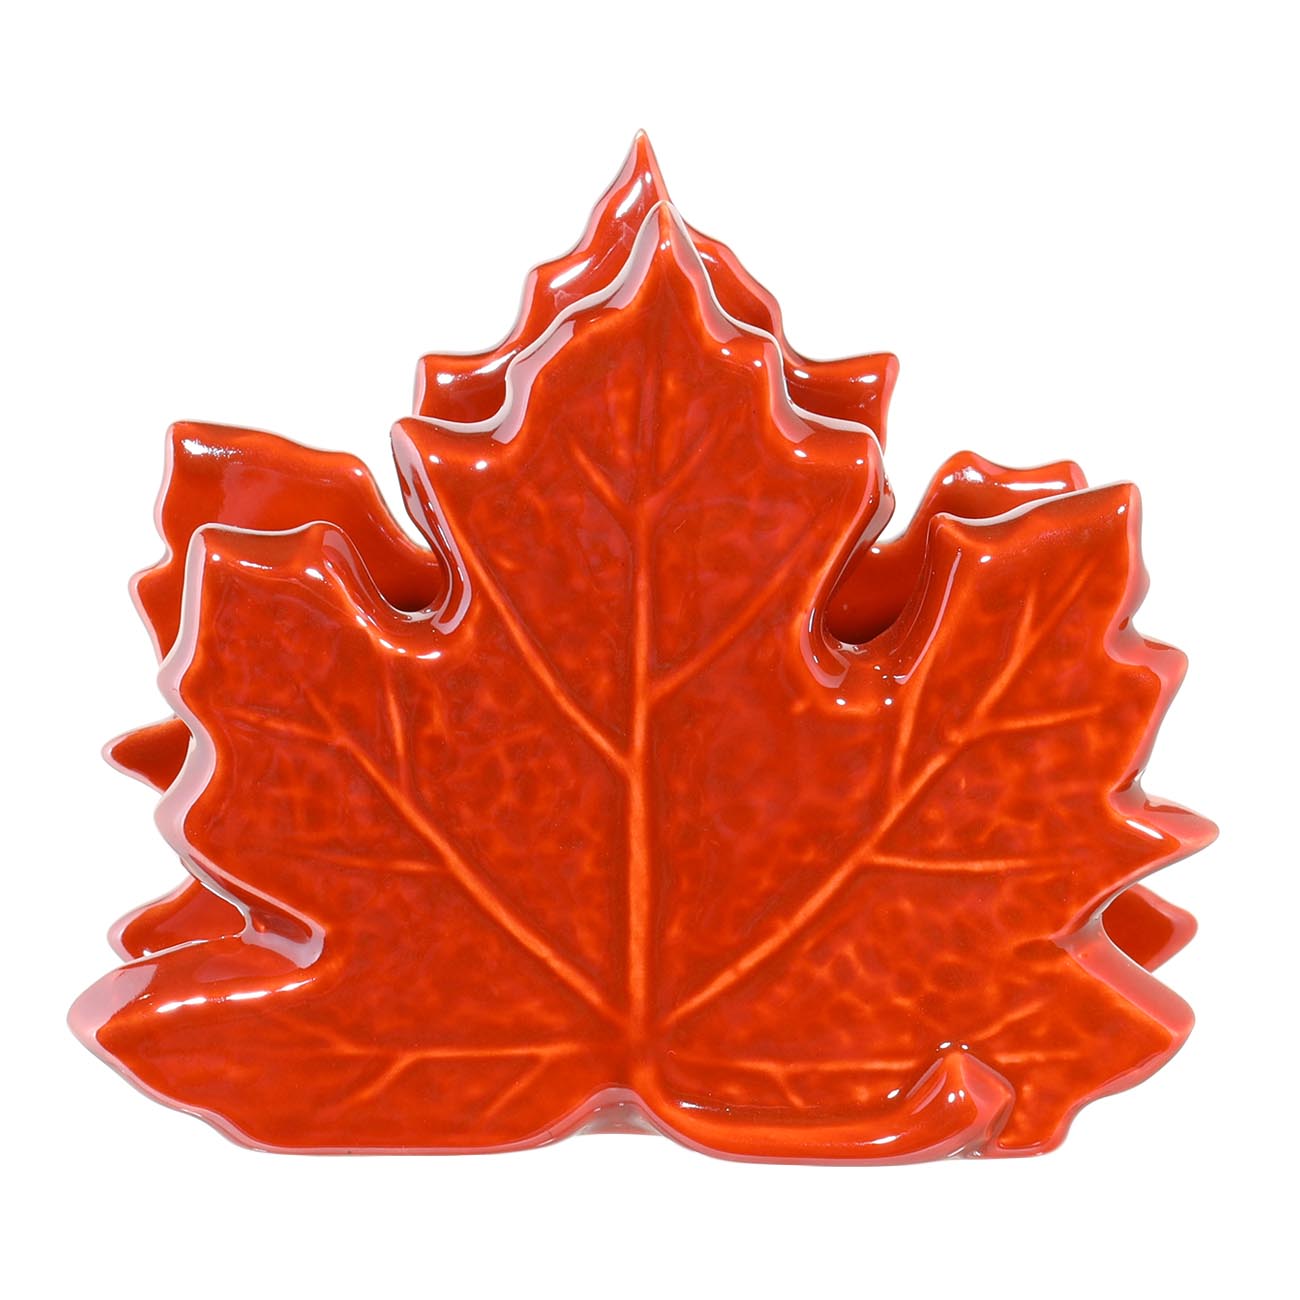 Салфетница, 10 см, керамика, оранжевая, перламутр, Кленовый лист, Autumn bright